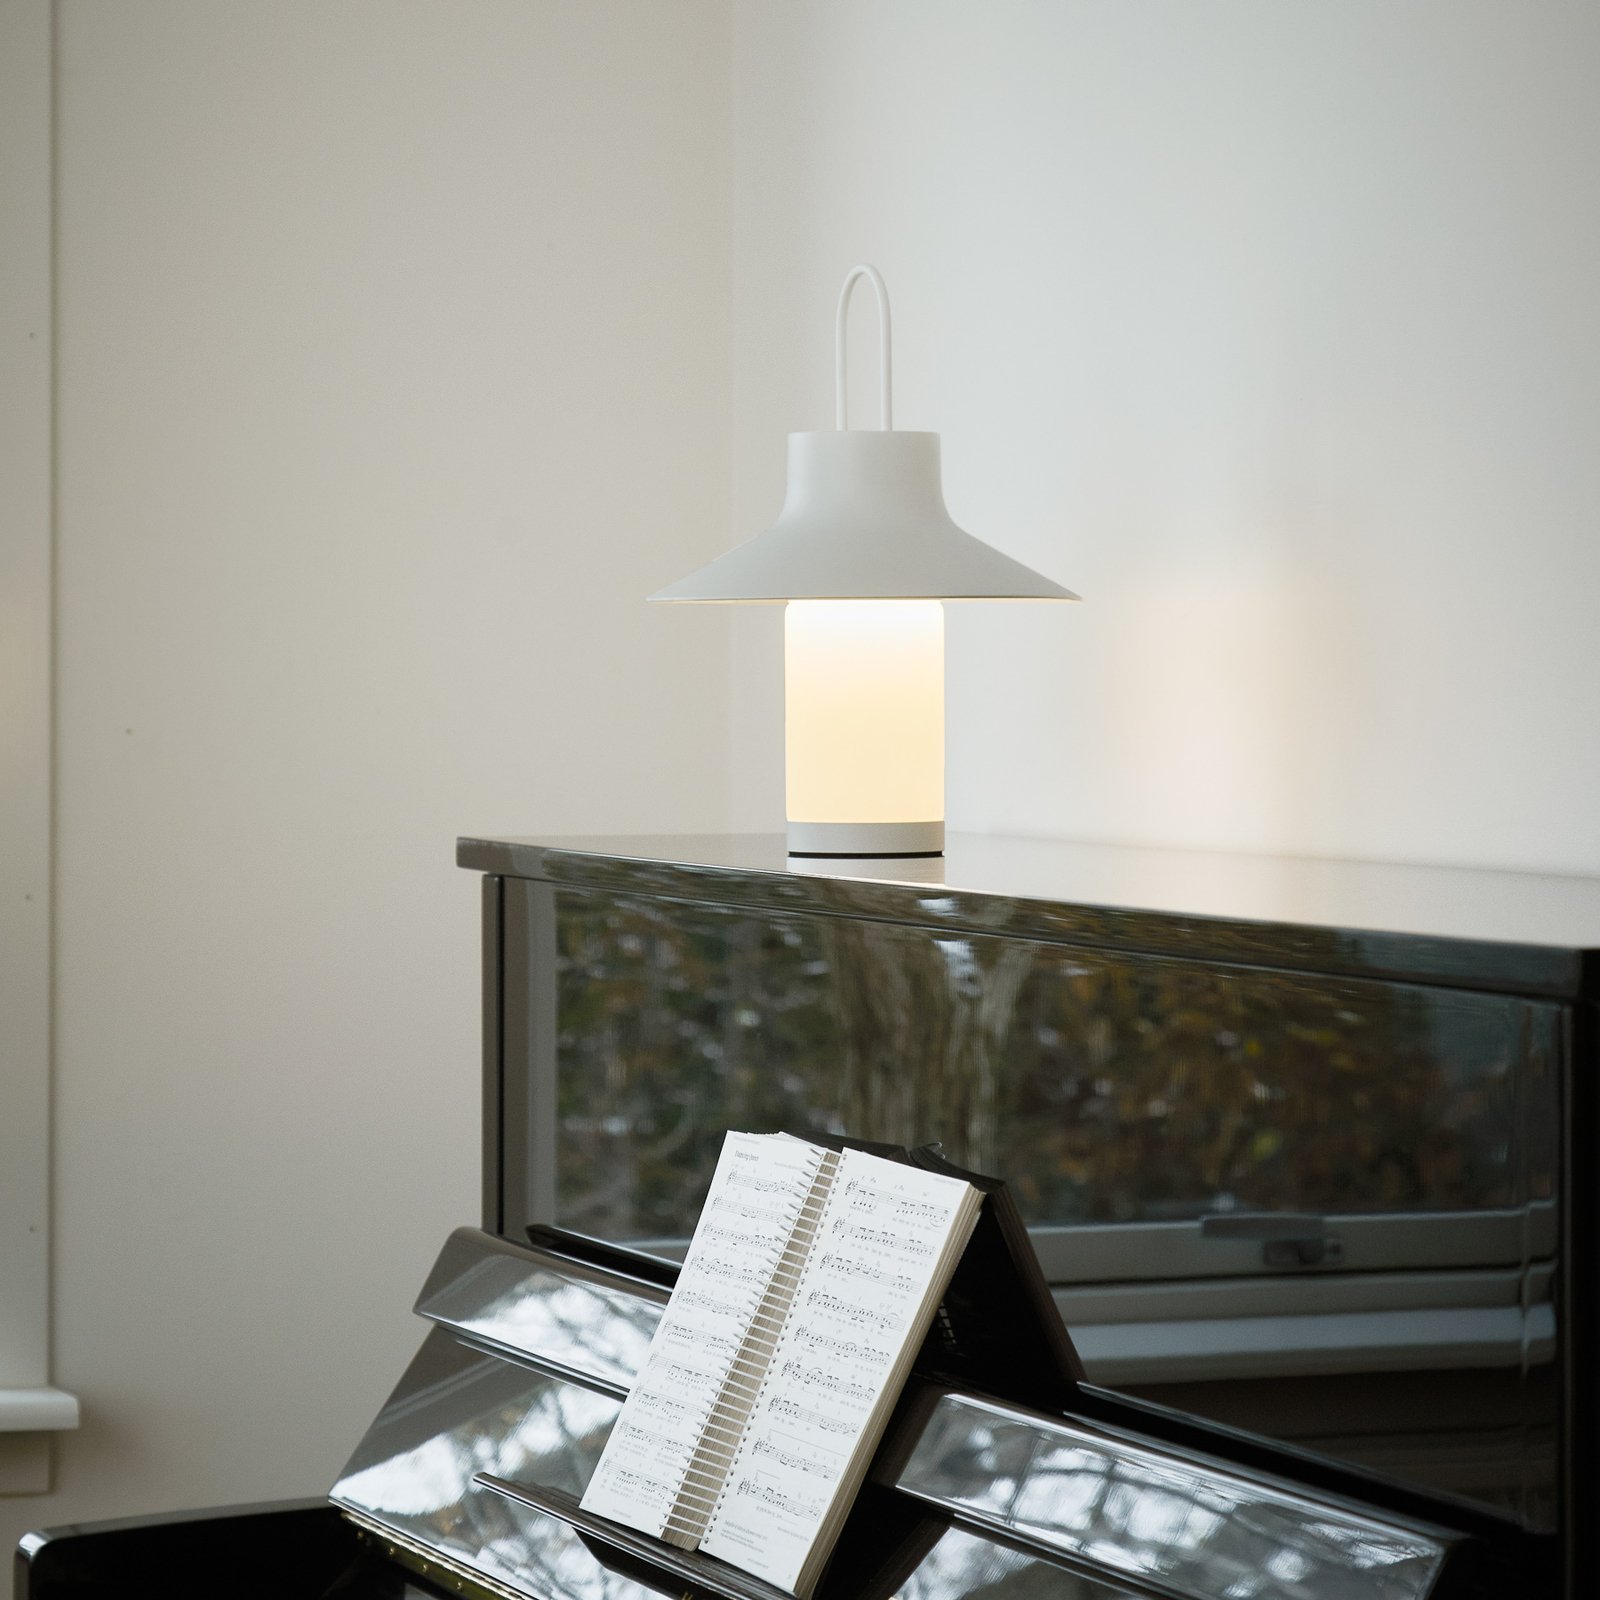 LOOM DESIGN LED dobíjecí stolní lampa Shadow Large, bílá, IP65